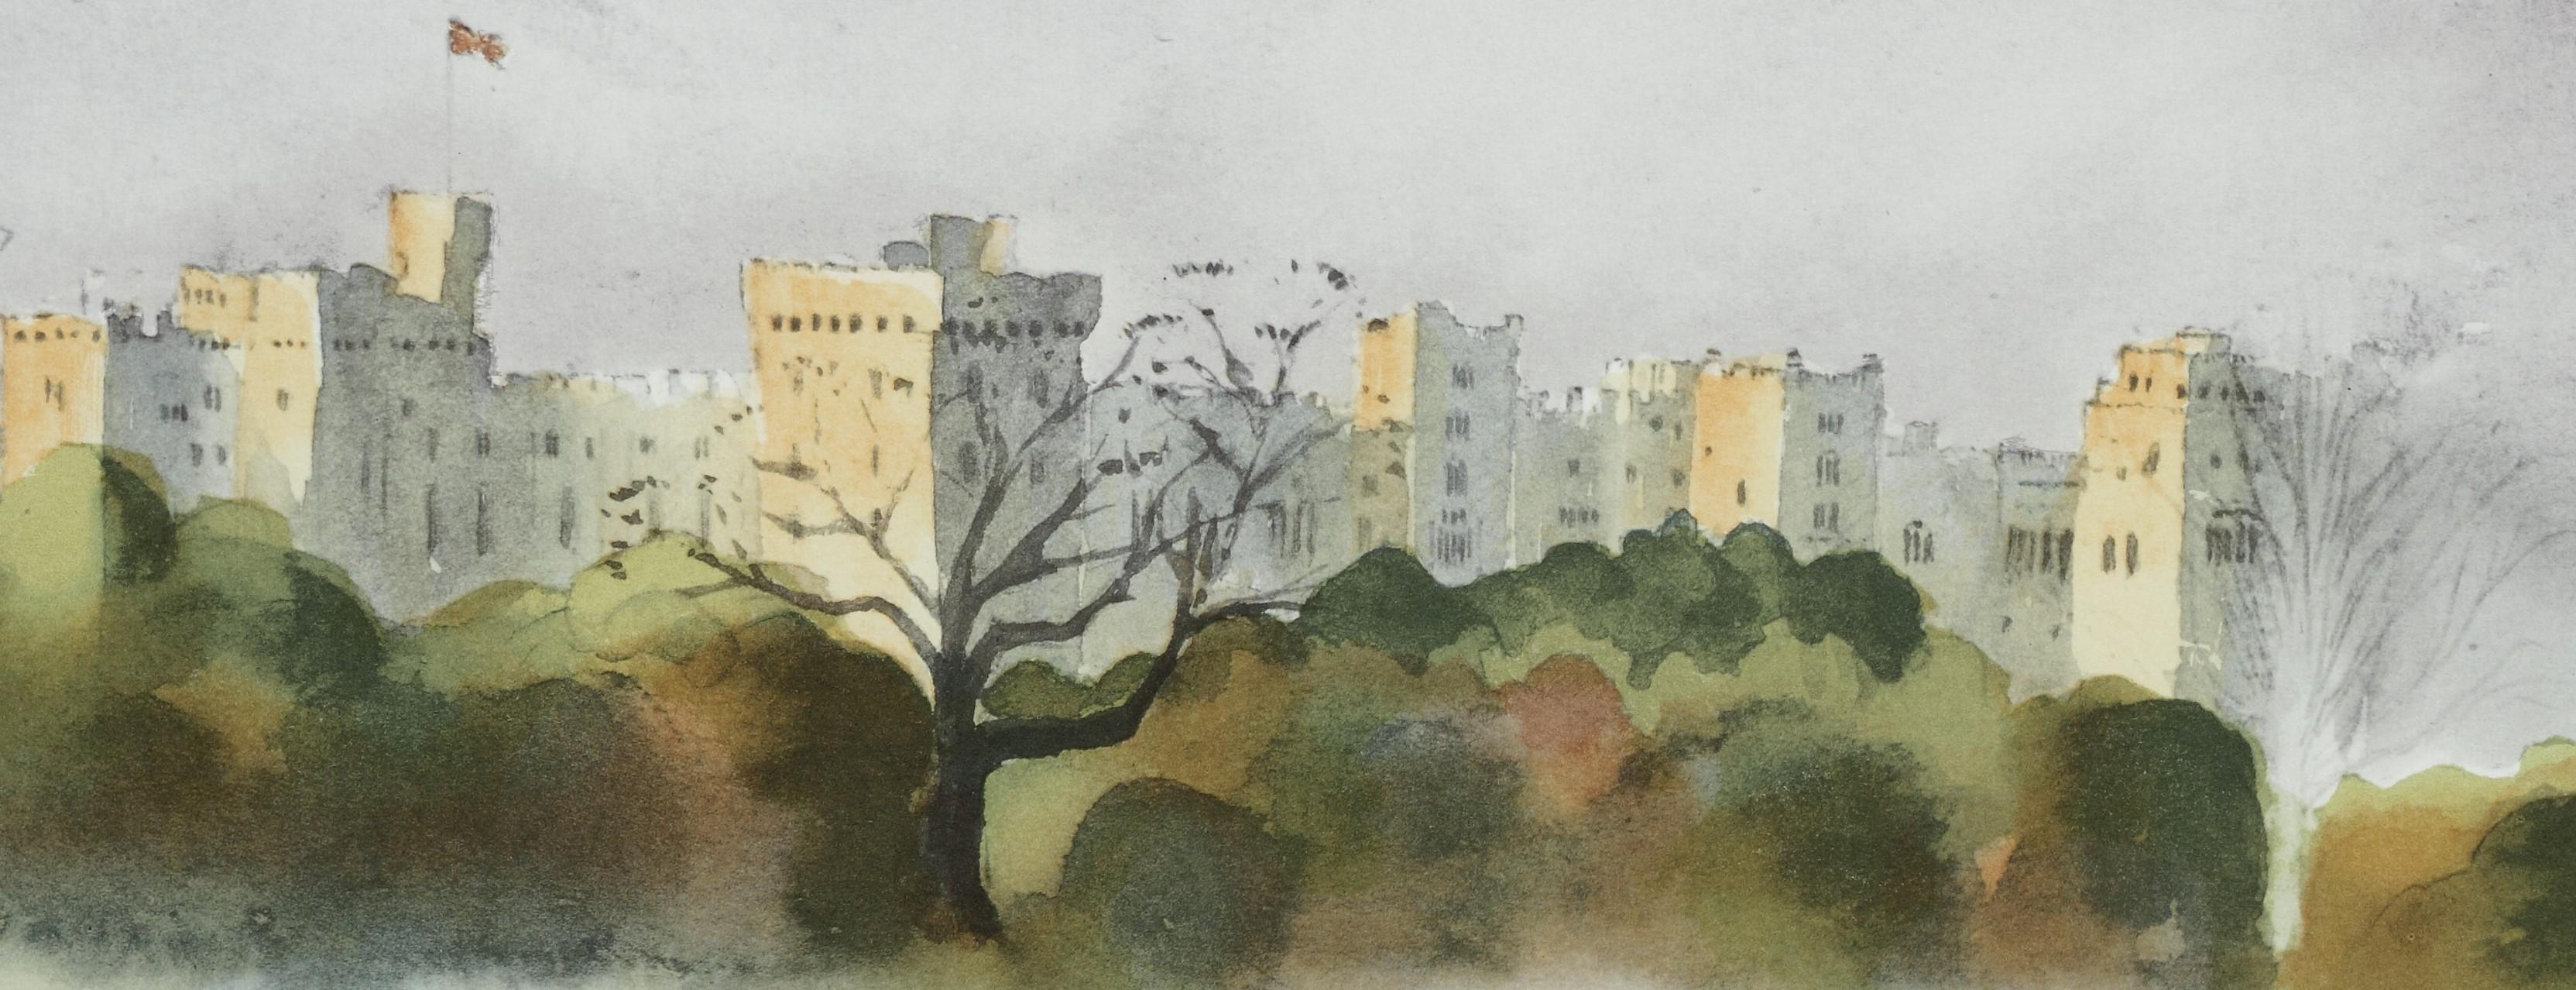 Castle Windsor - Lithographie signée, Art royal, Maisons royales, château de Windsor, Grande-Bretagne - Académique Print par His Majesty King Charles III